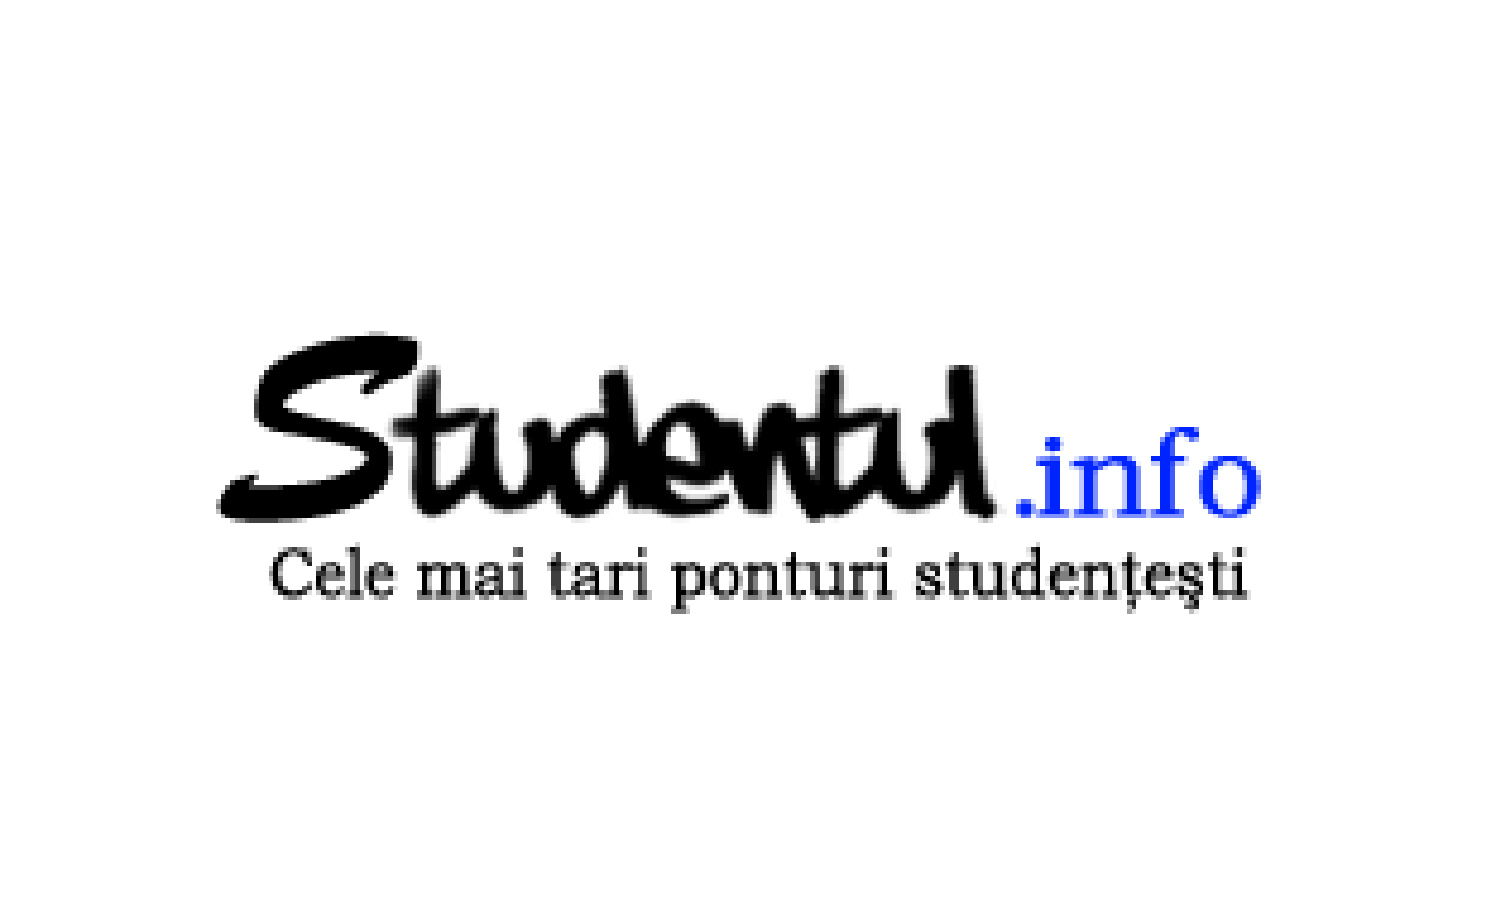 studentul.info